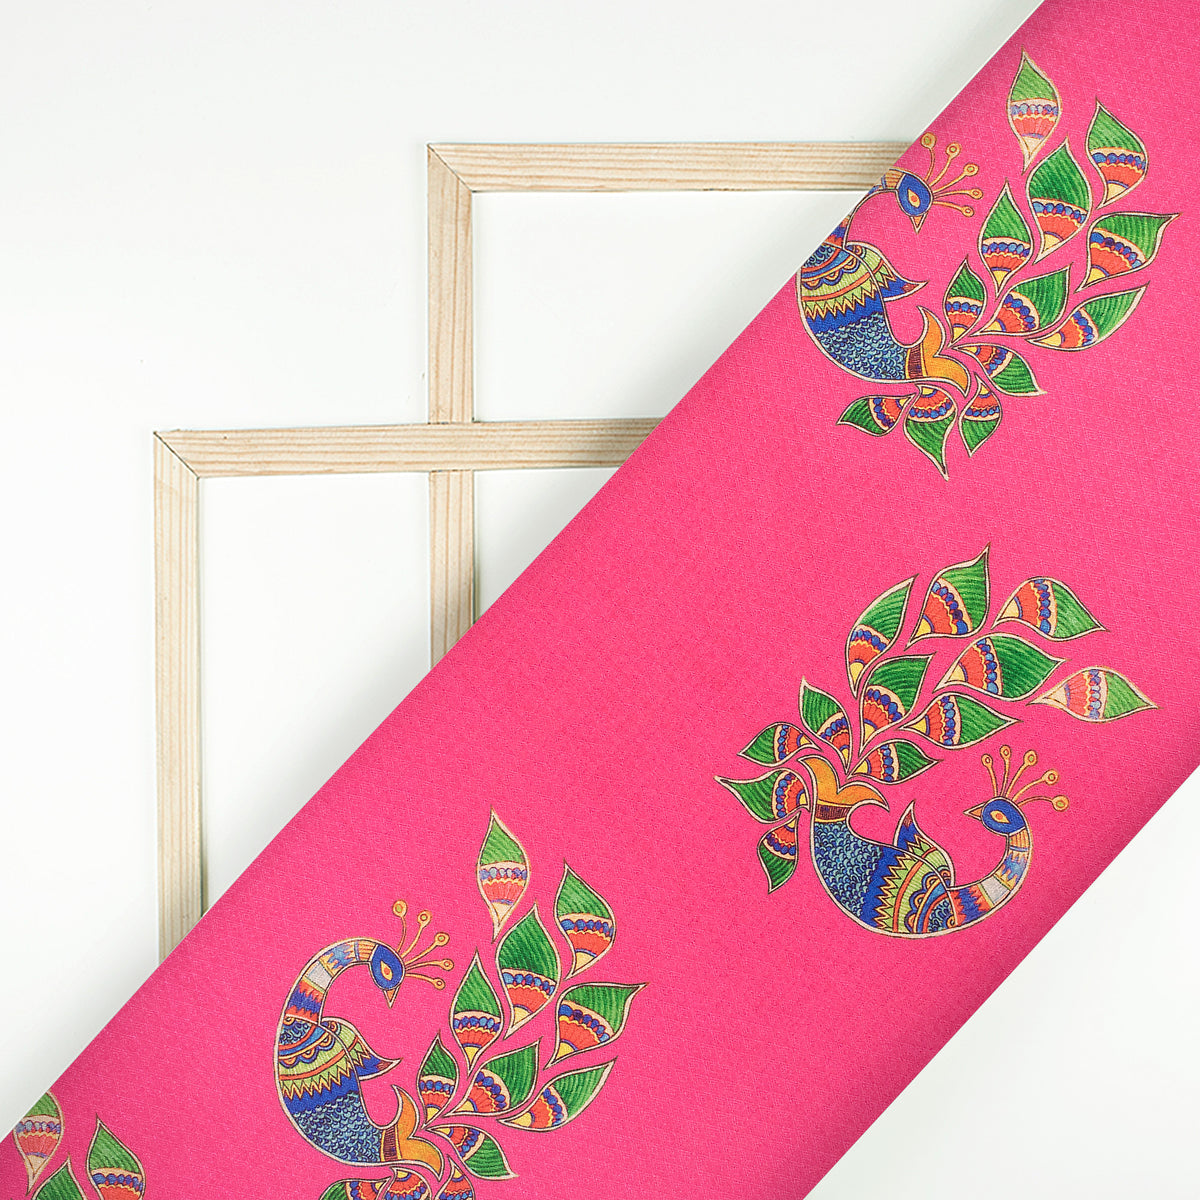 Fuscia Pink Madhubani Jacquard Booti Art Silk Fabric (Width 56 Inches)